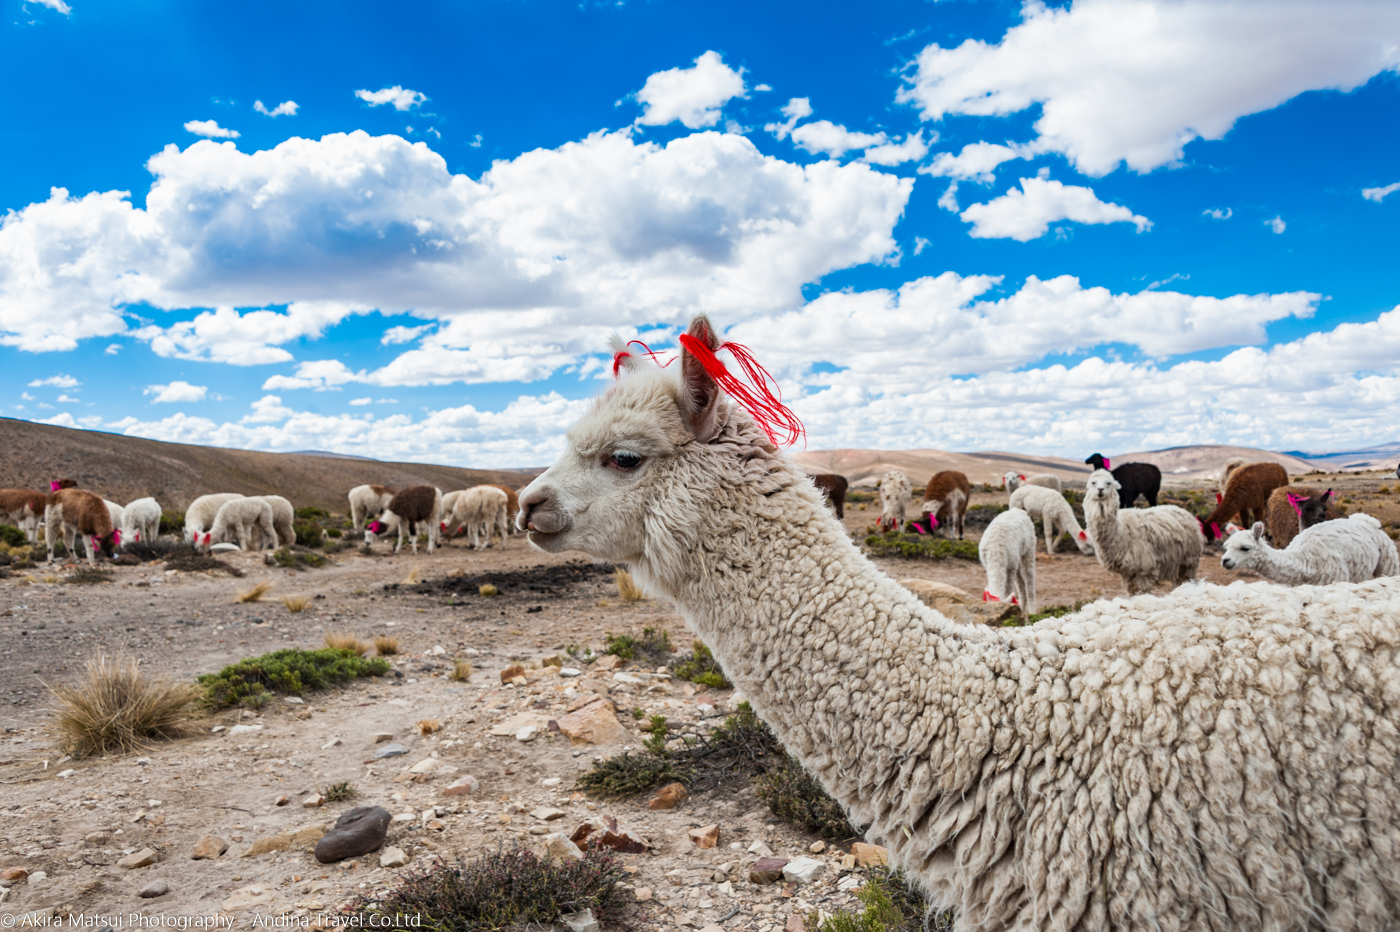 ラクダの楽園でアルパカと出会う ペルー コンドルの谷へ 写真家 松井章 アンディーナ ブログ